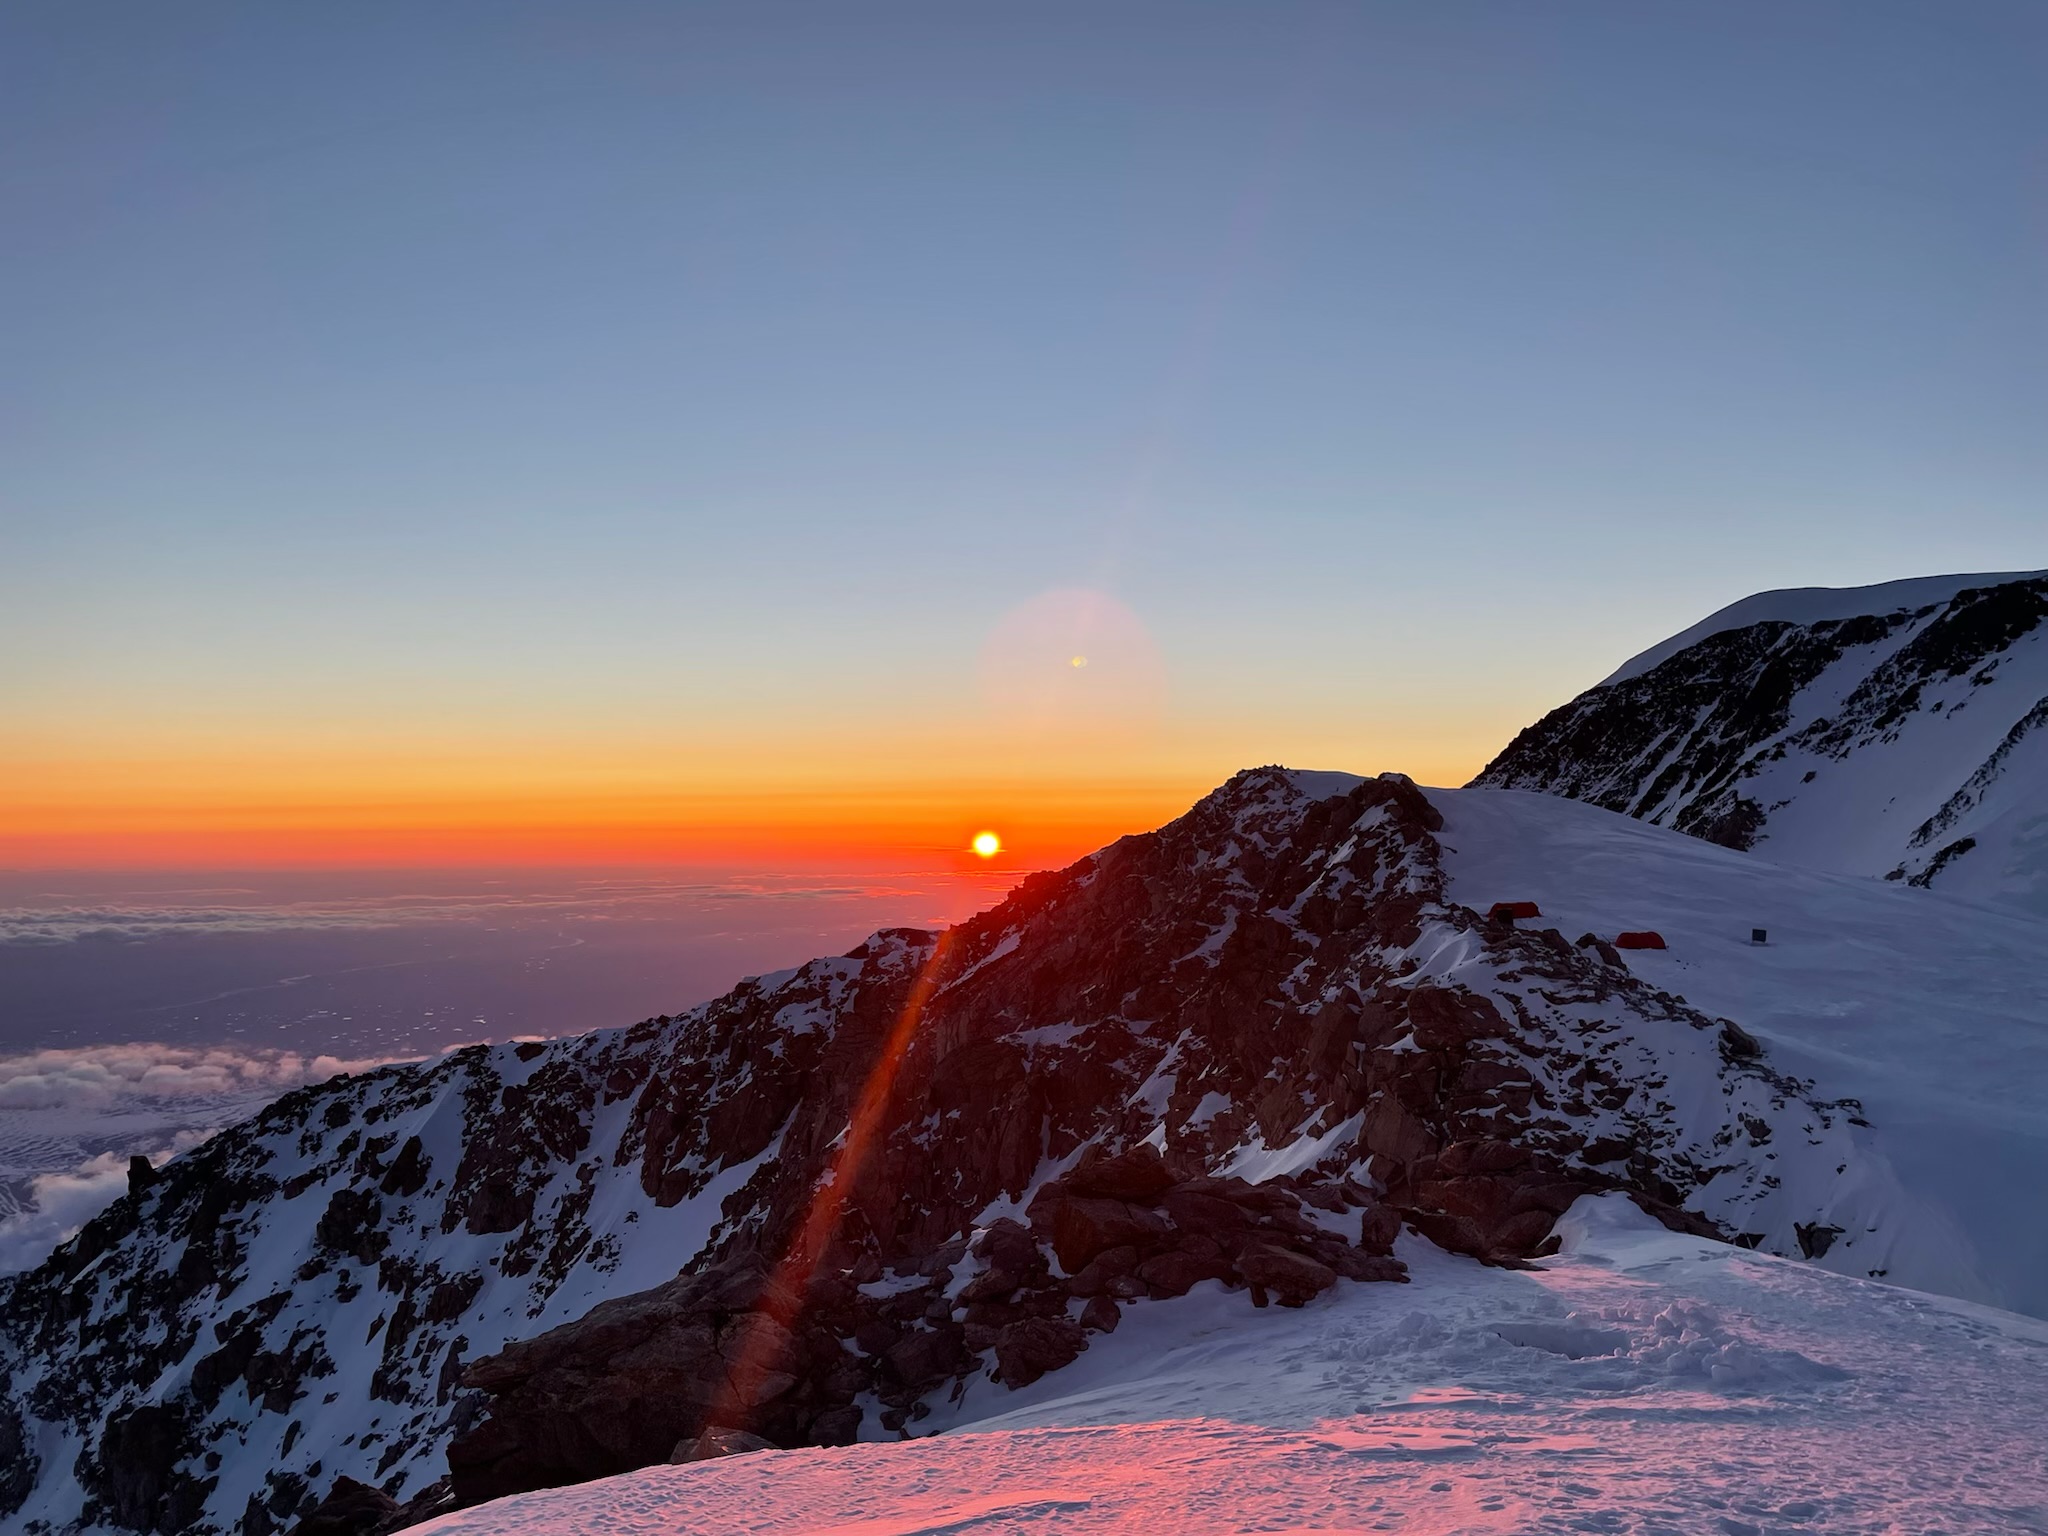 The sun sets behind a mountain ridge